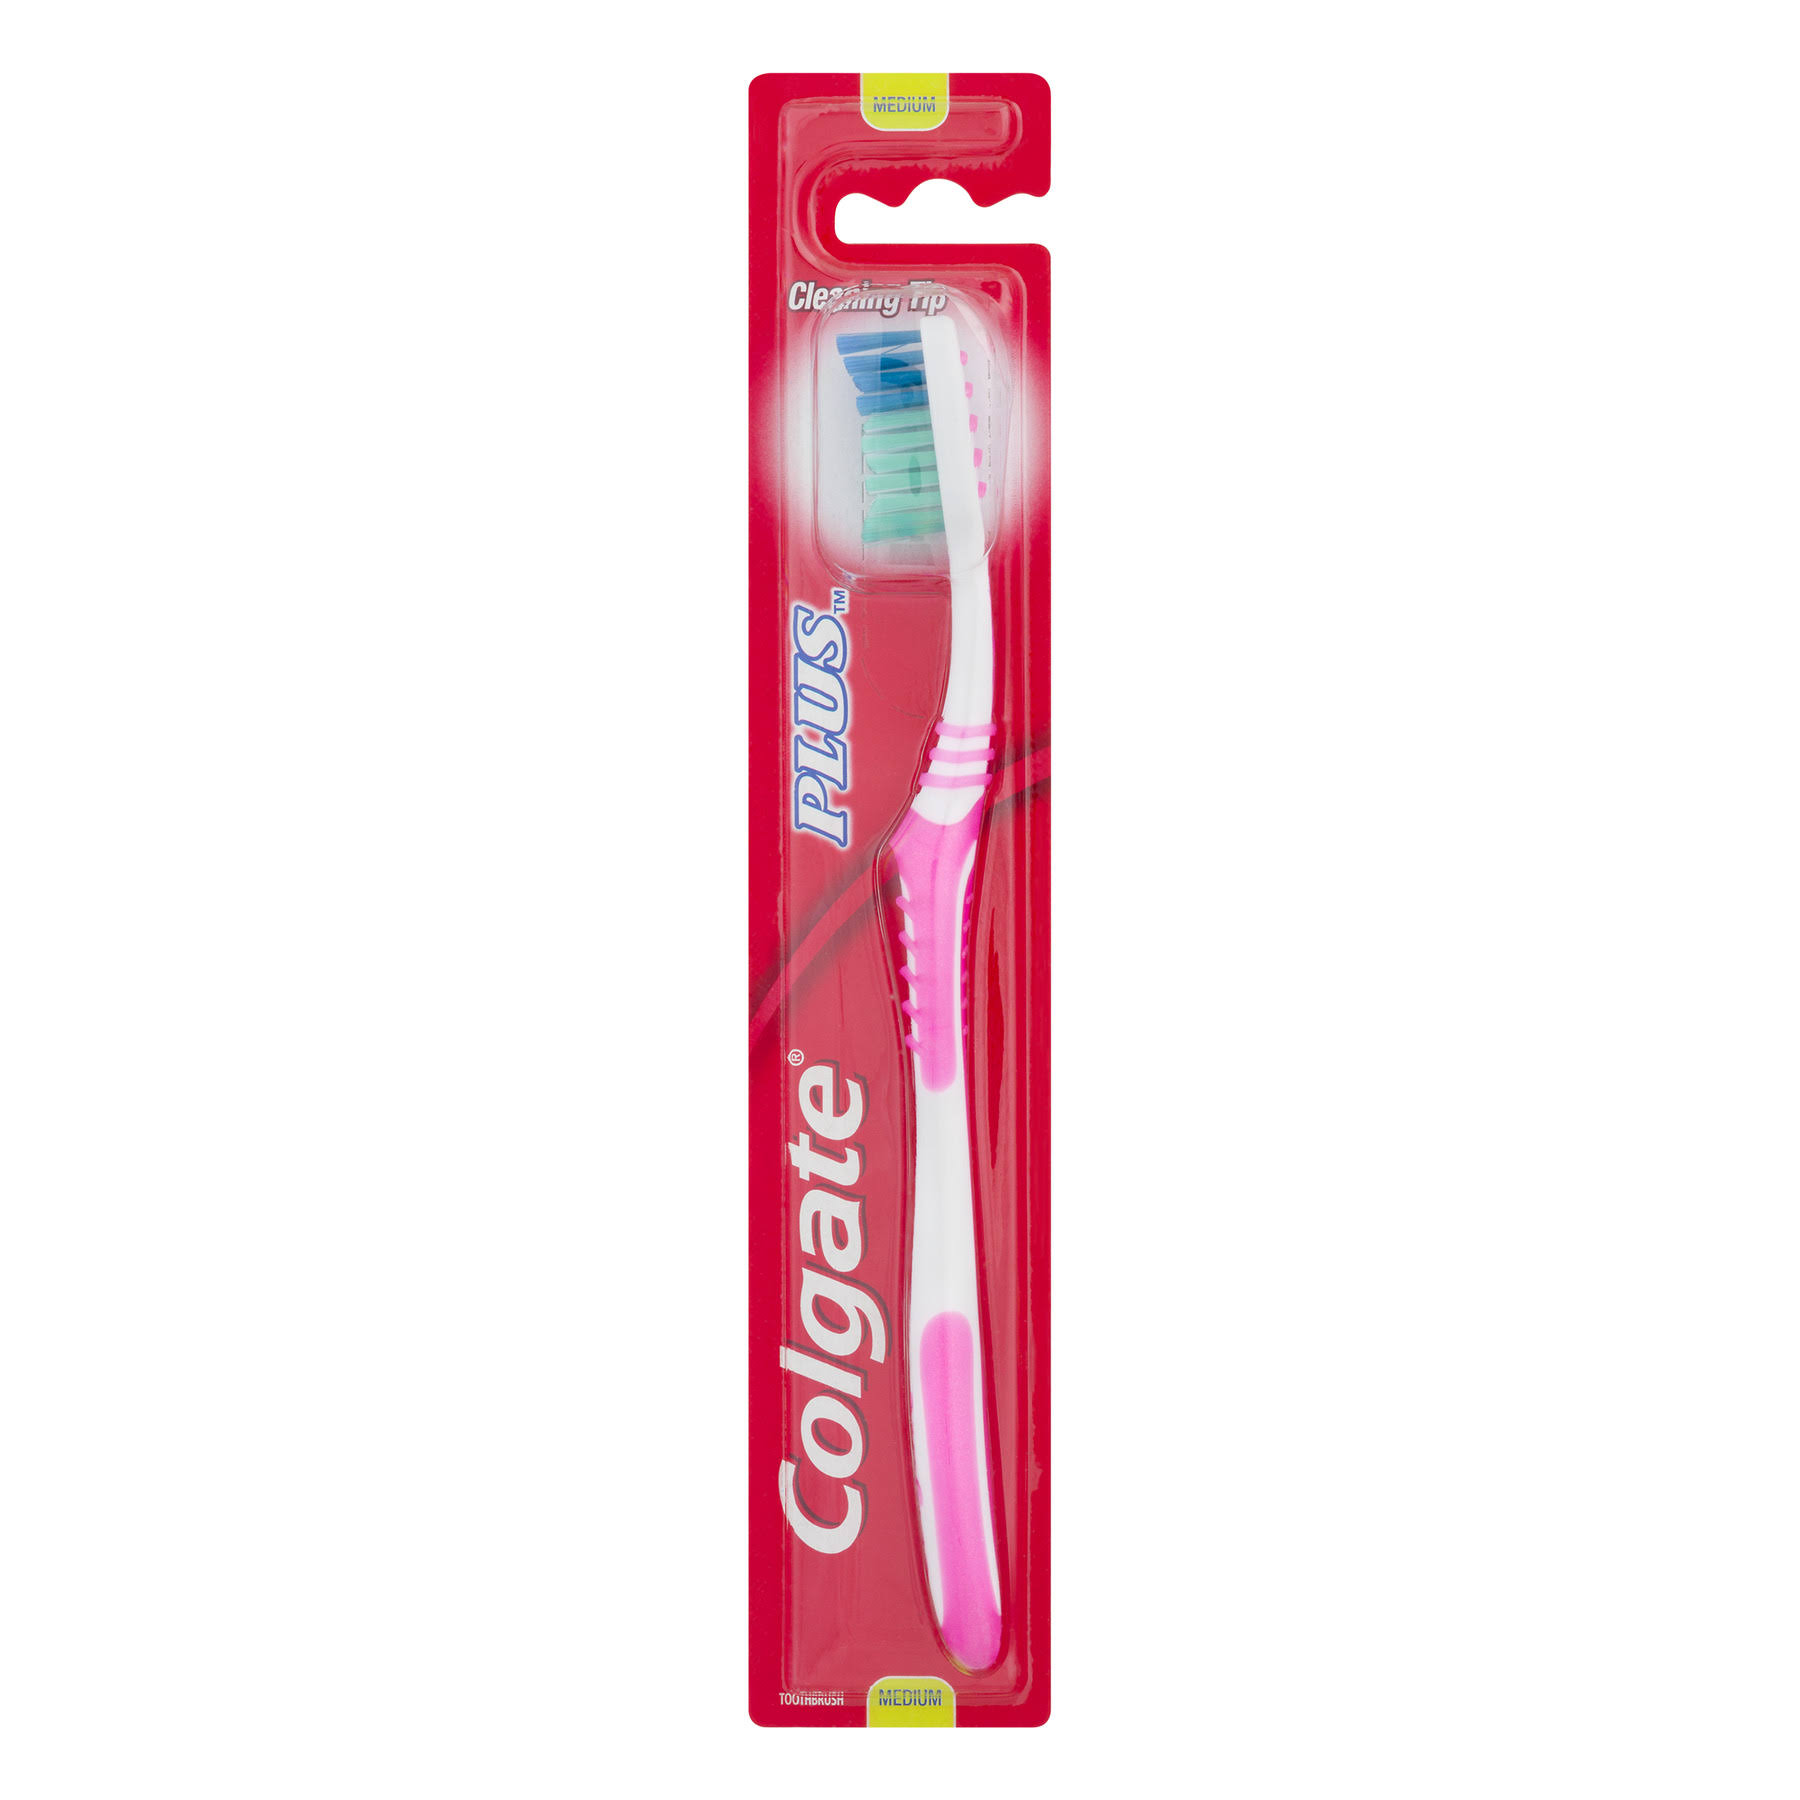 Colgate Plus Toothbrush Medium, 1 Each Colgate